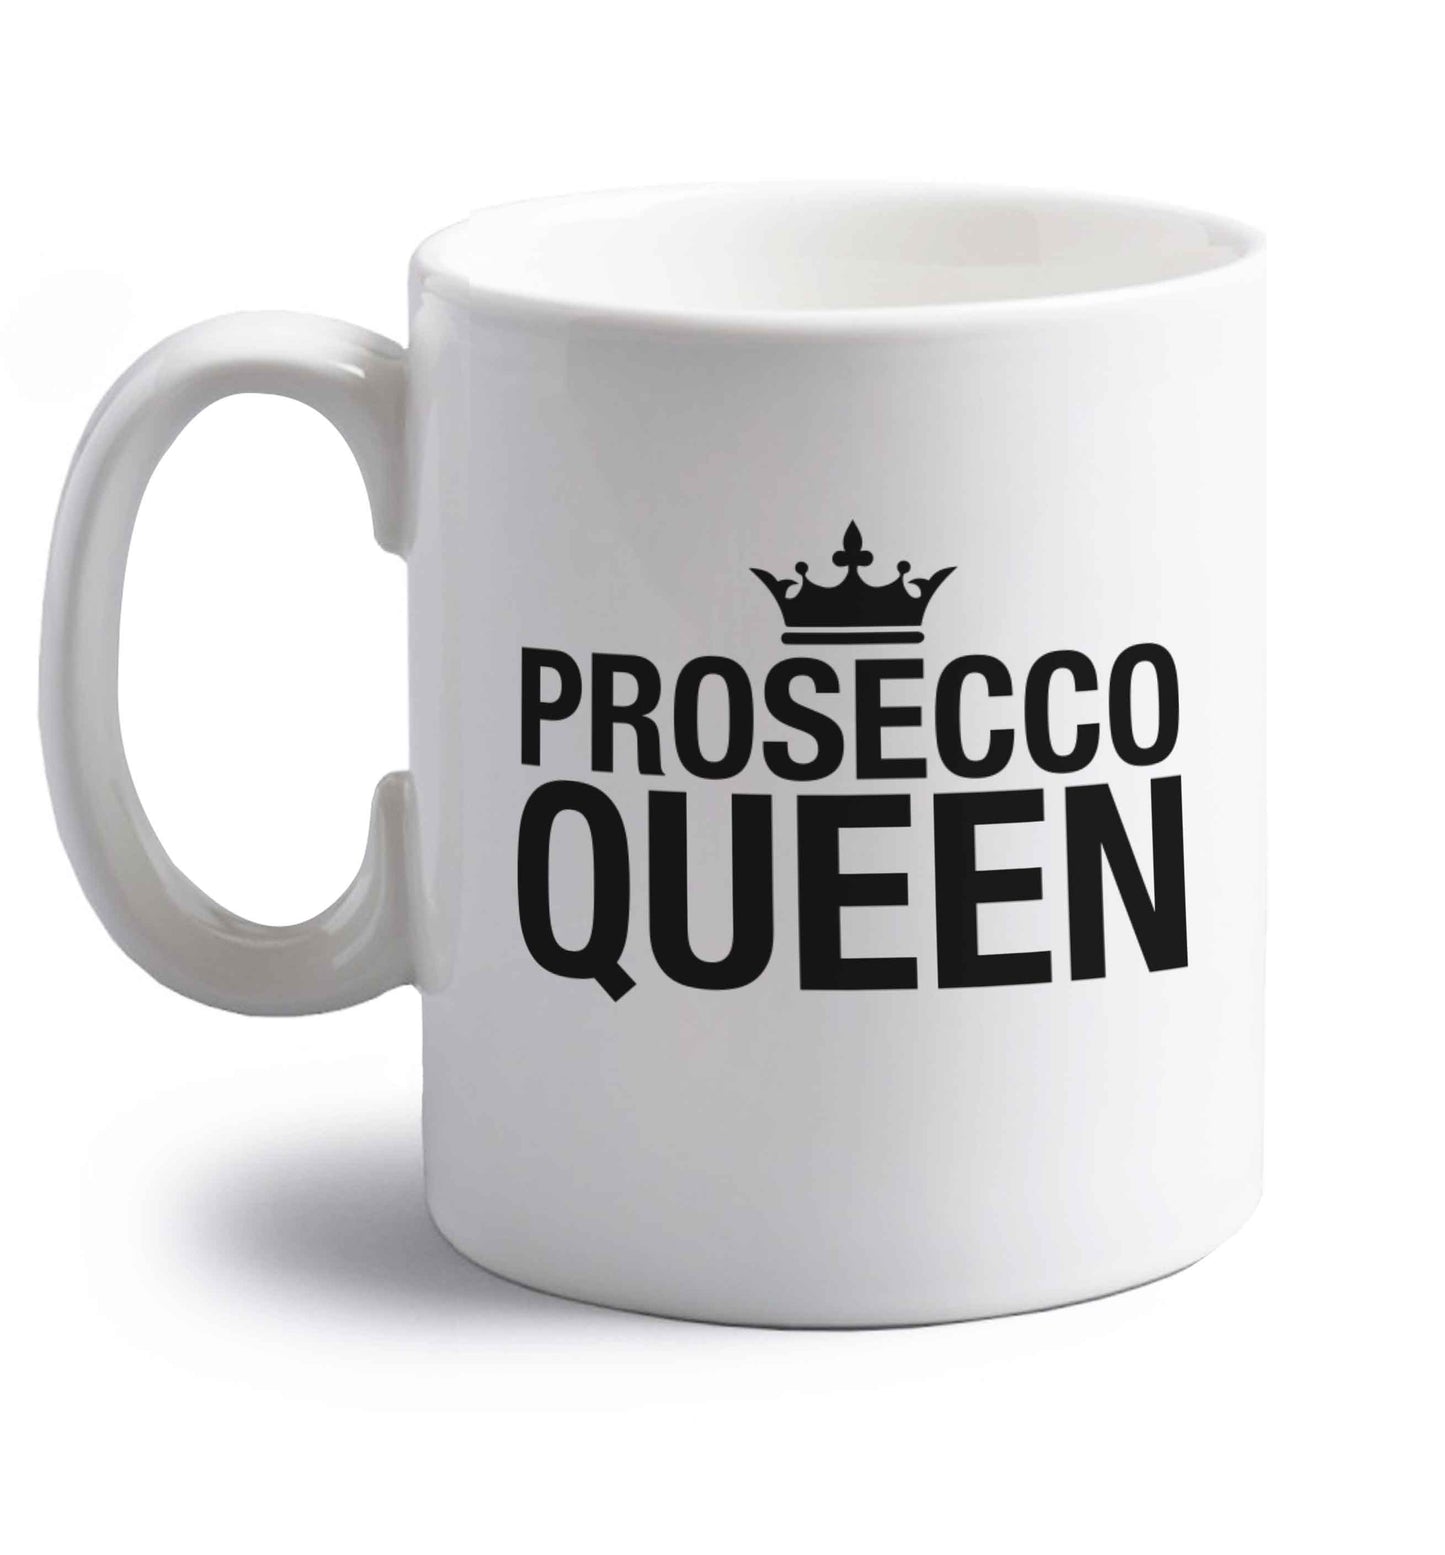 Prosecco queen right handed white ceramic mug 